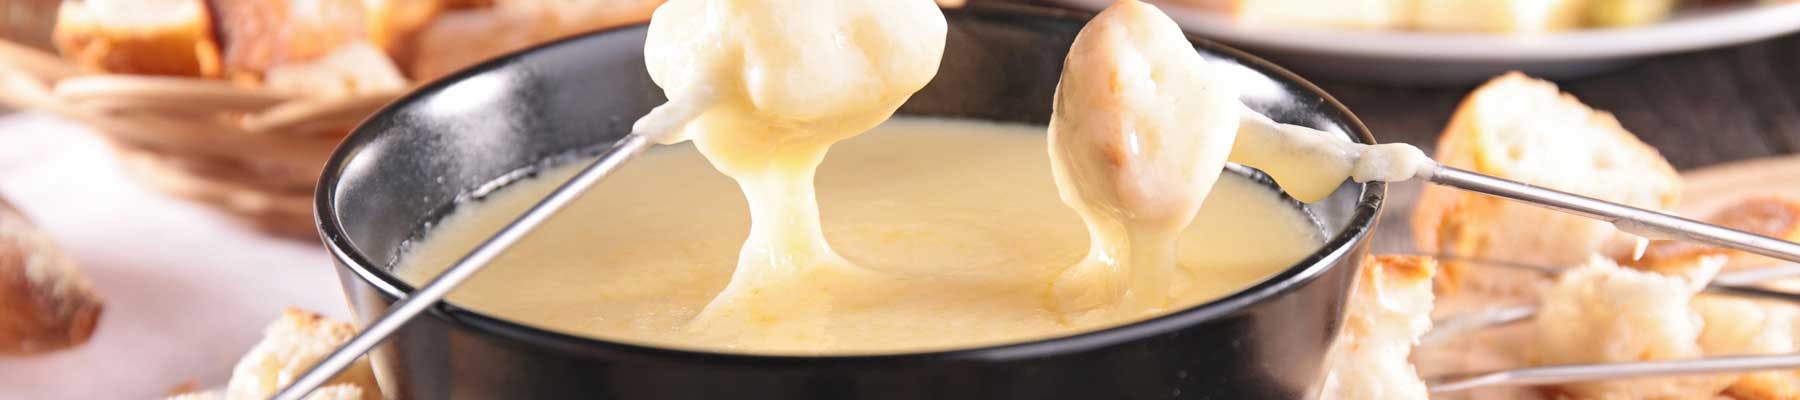 Raclette und Käsefondue: Tipps, Beilagen, Gewürze und ein Geheimtipp für die Verdauung